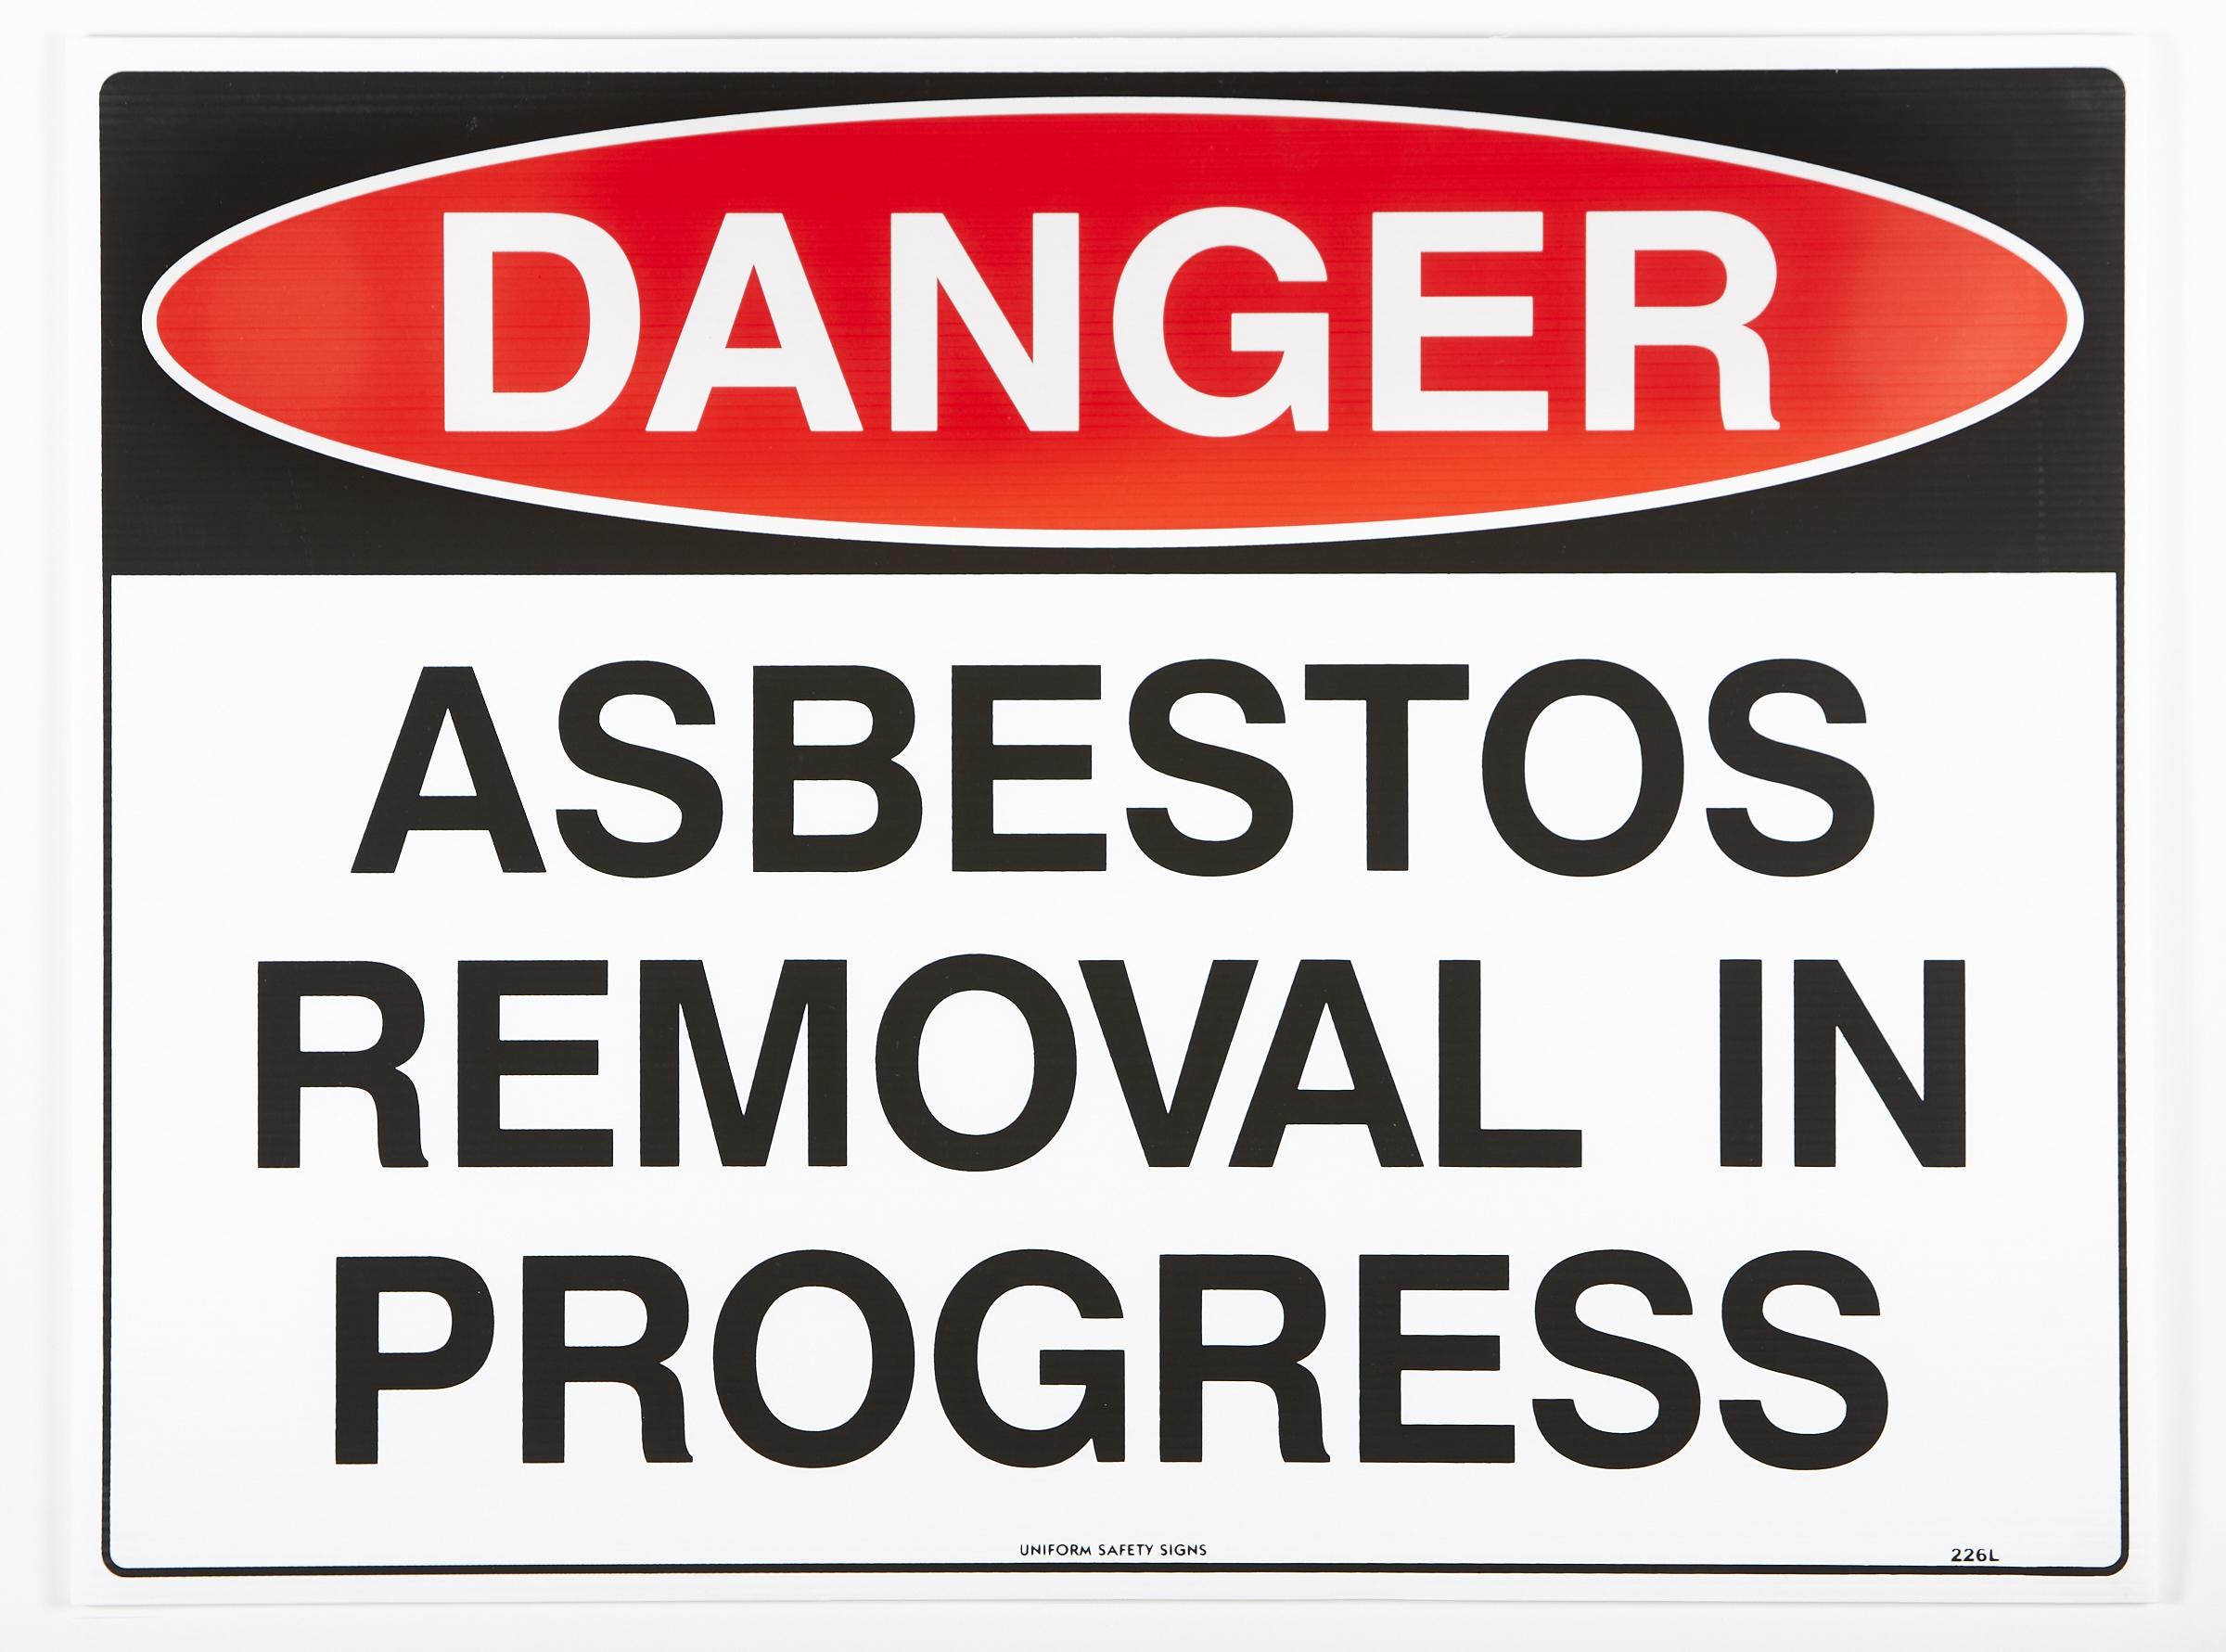 Danger Asbestos Removal In Progress